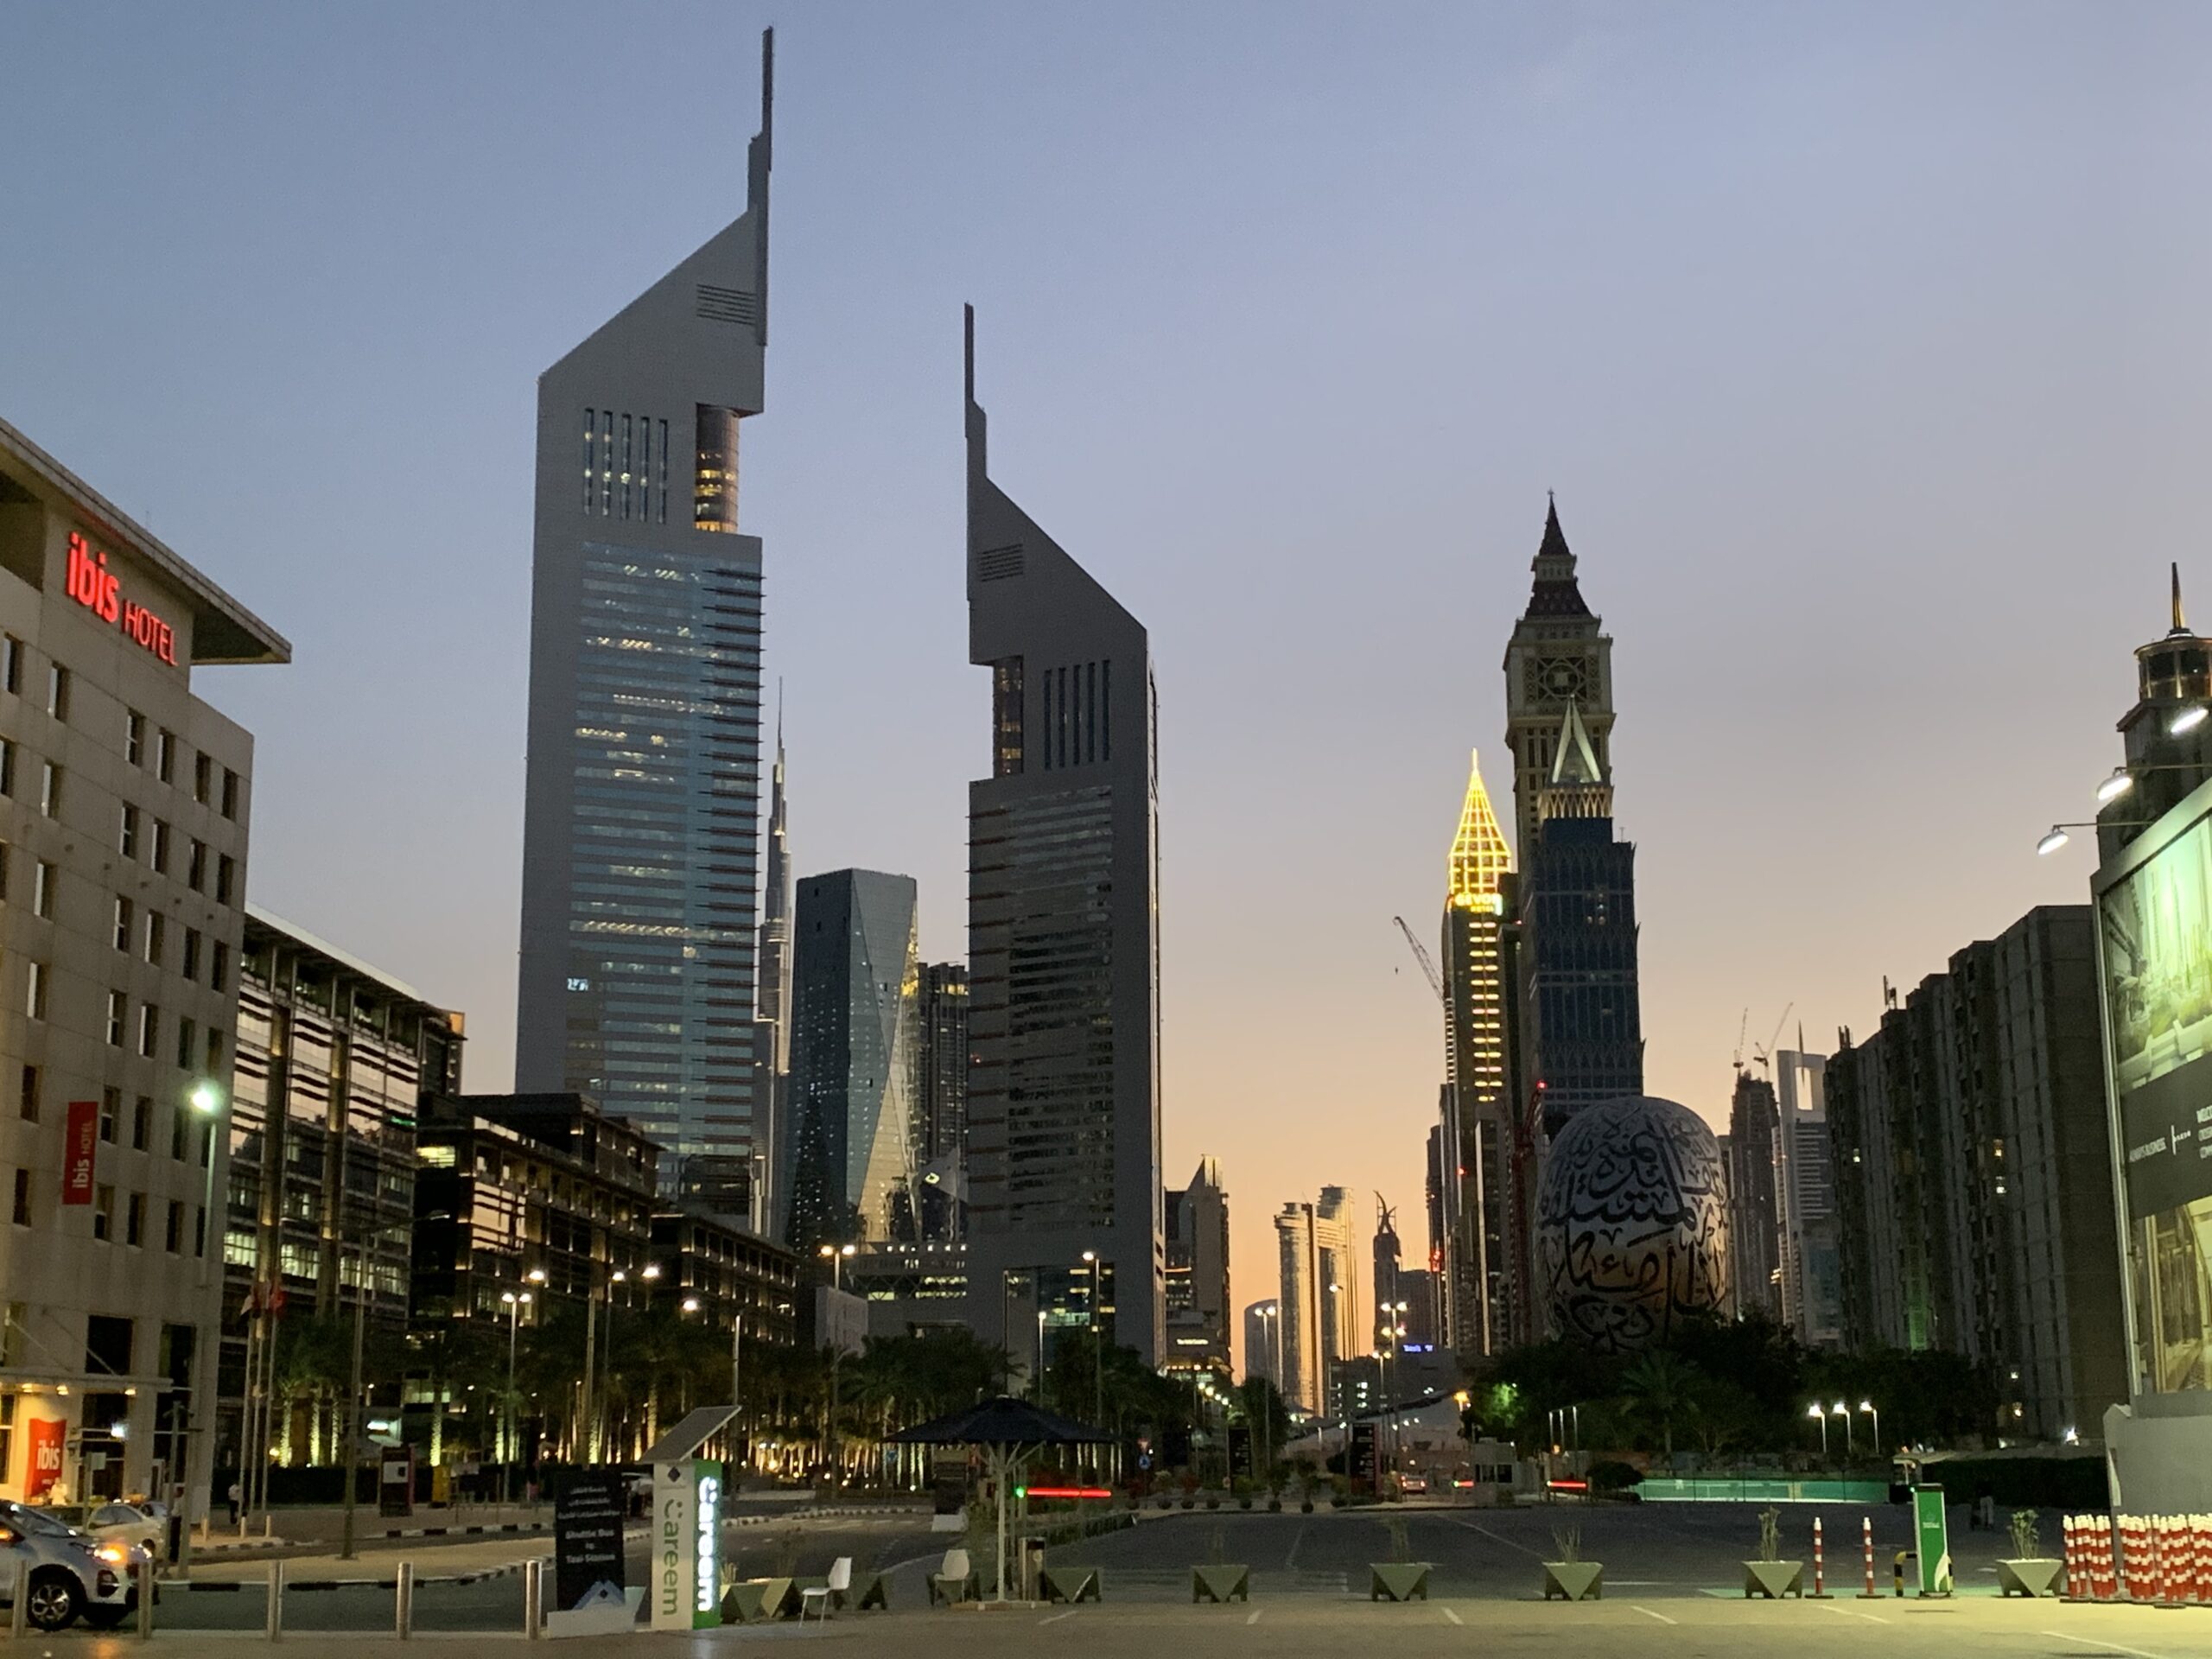 Emirates Towers at dusk